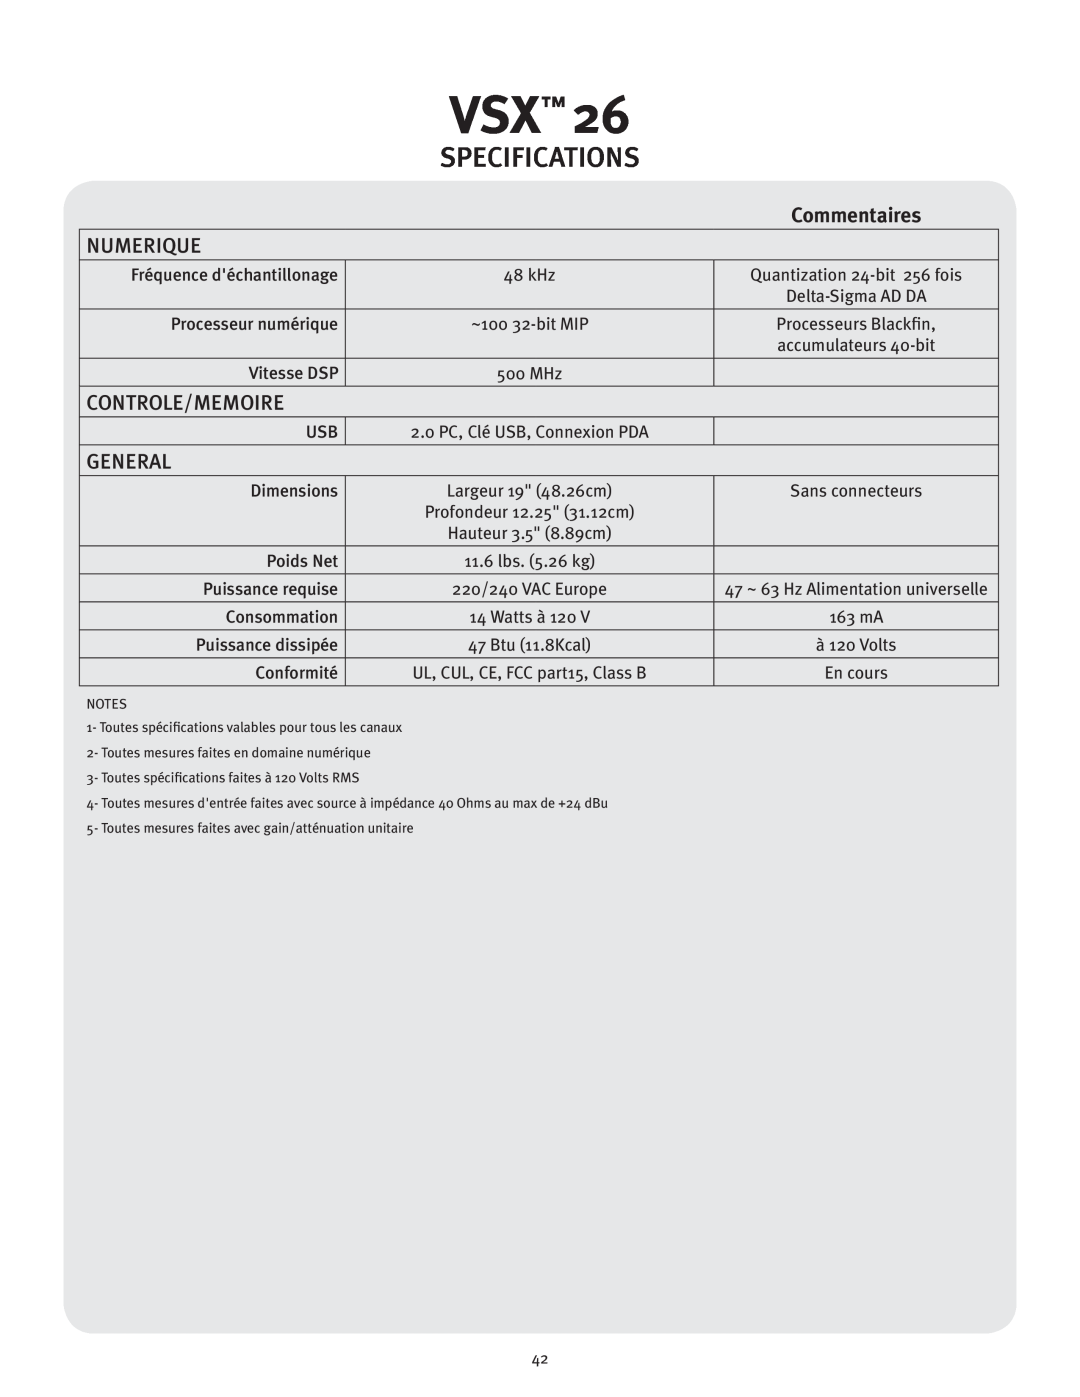 Peavey VSX 26 manual Numerique, Controle/Memoire, Specifications, General, Commentaires 